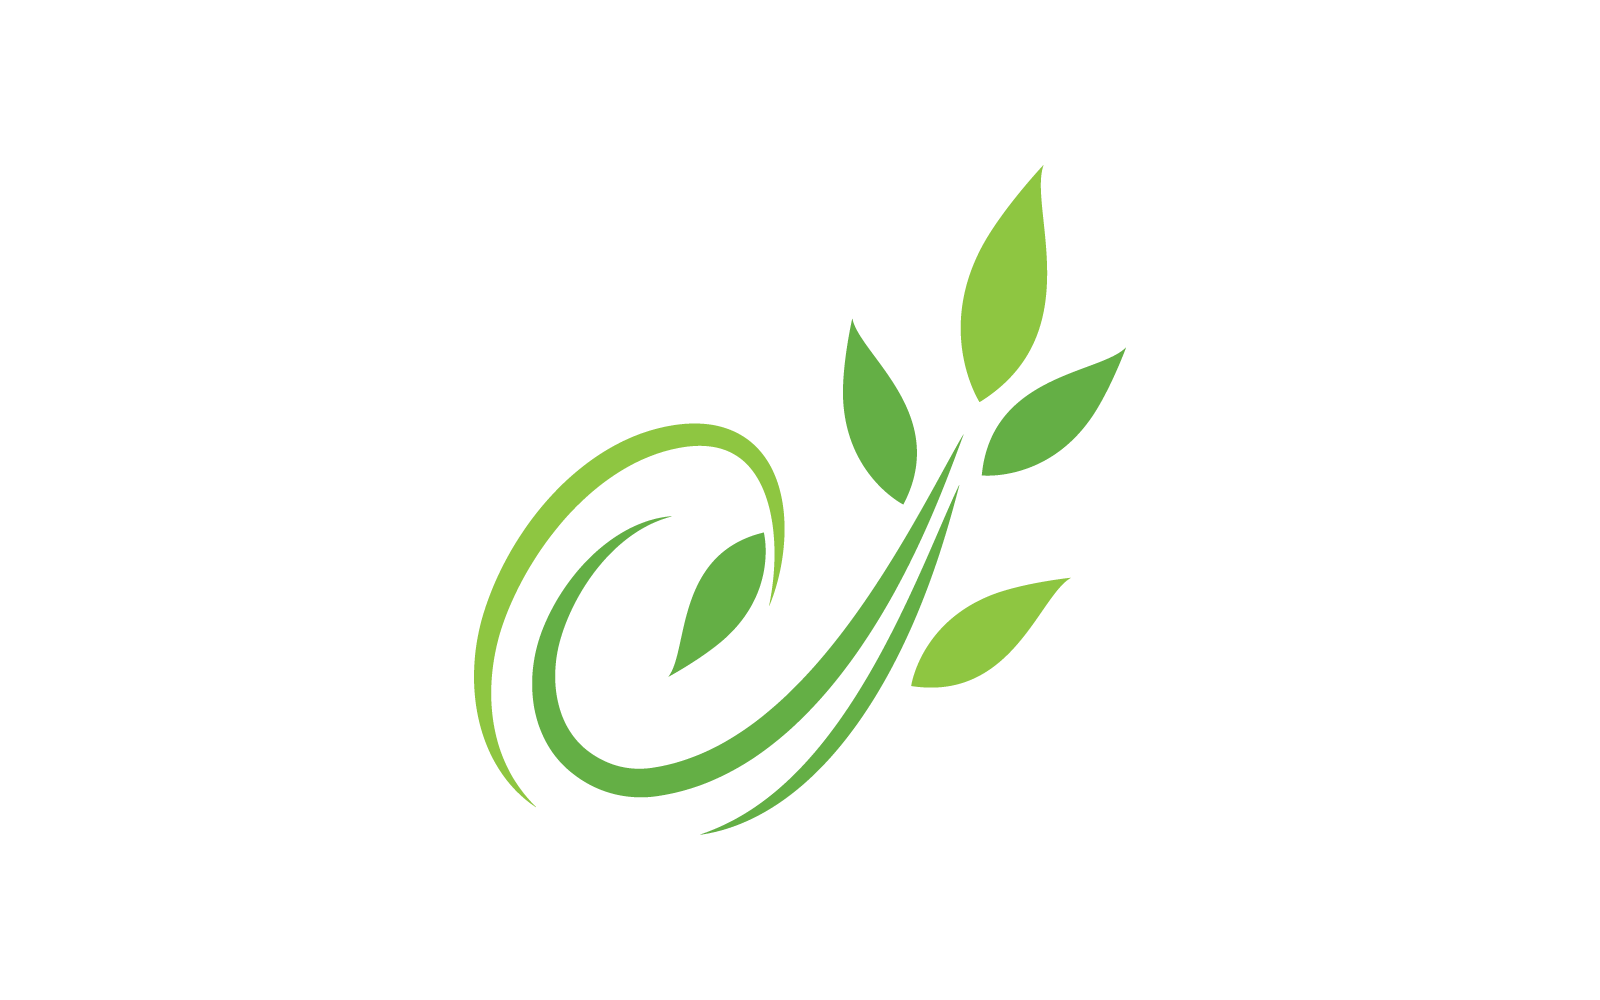 Eco green leaf illustration design template